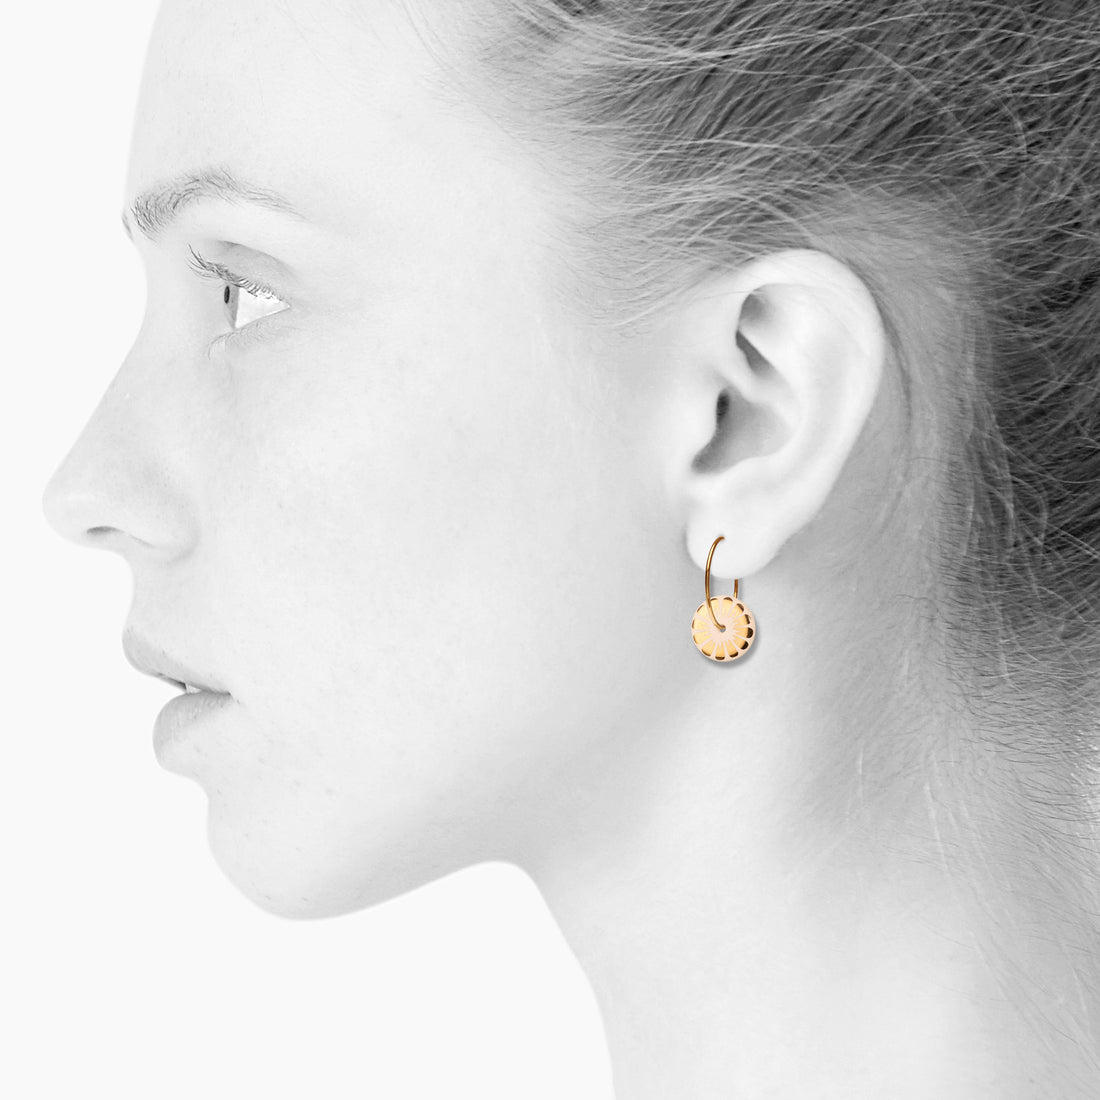 BLOOM øreringe - NUDE/GOLD - SCHERNING smykker